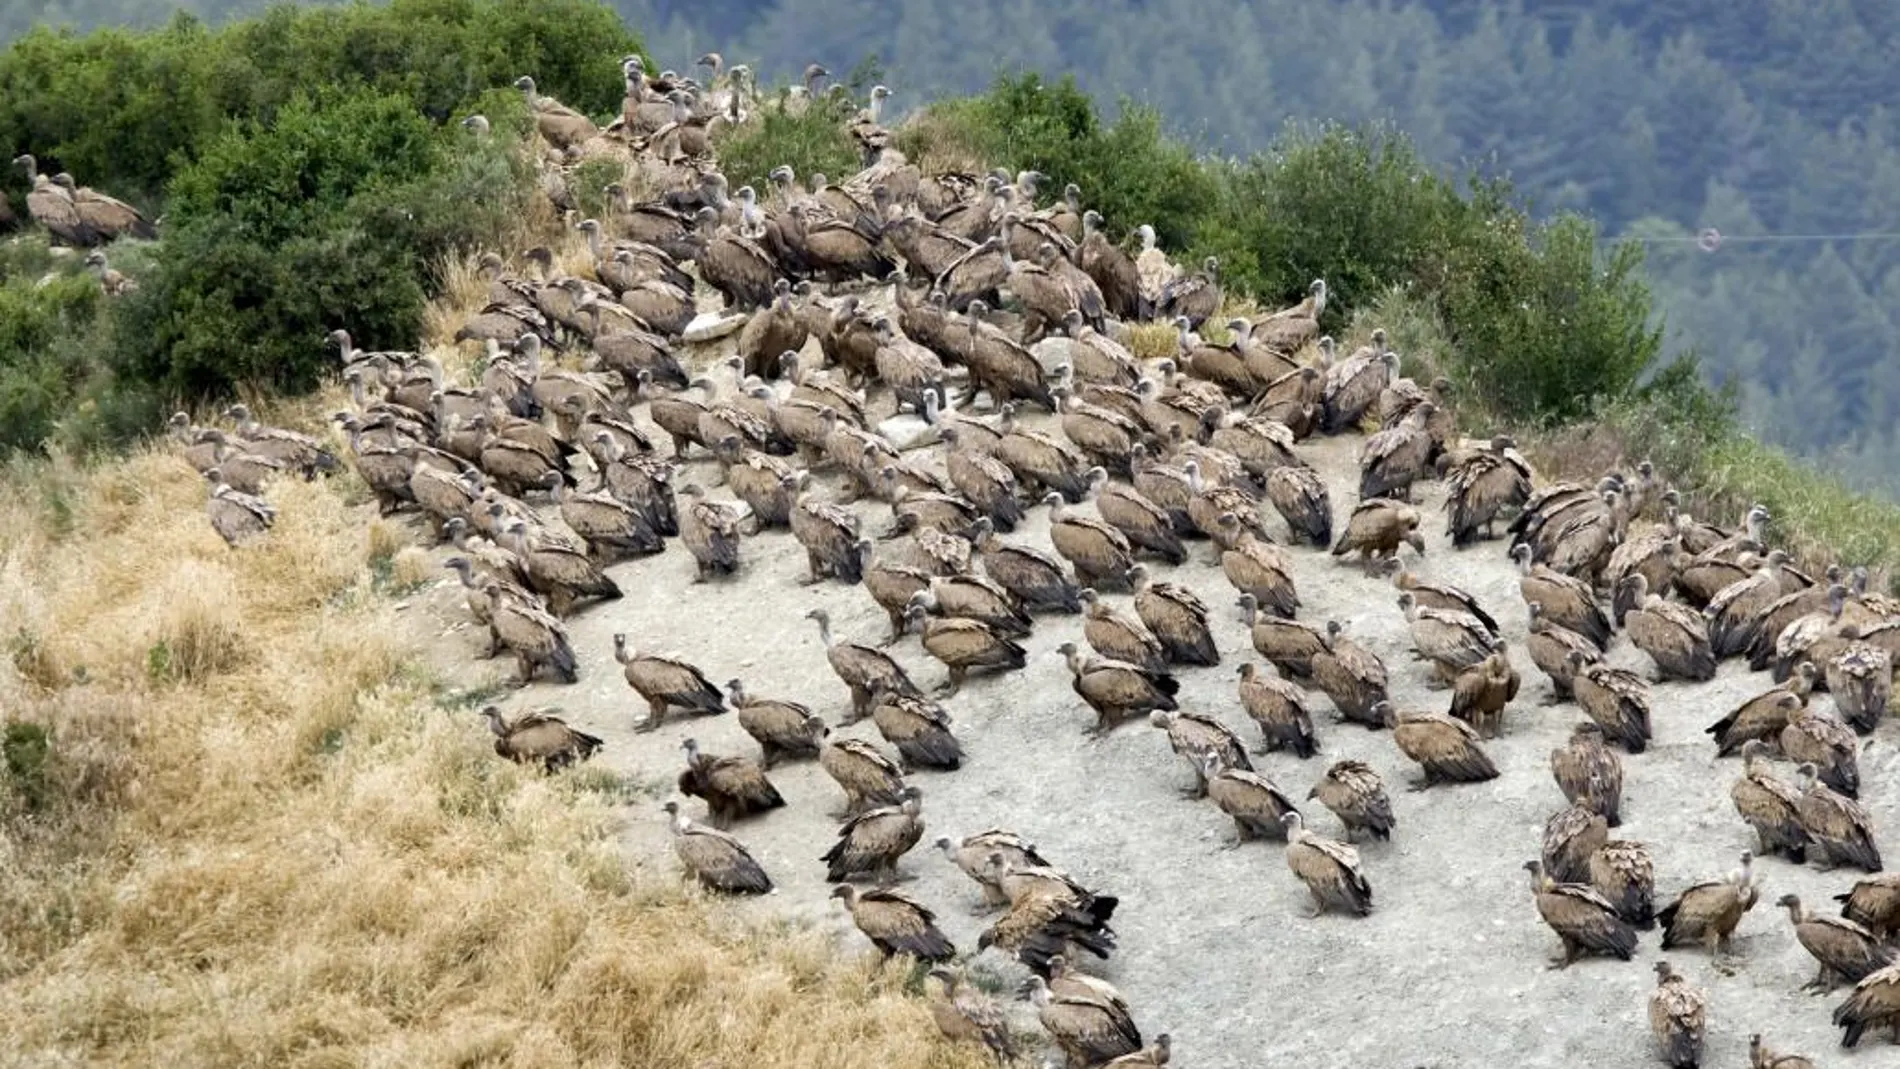 Cerca de 600 buitres leonados esperan la llegada de alimentos en la ladera de un monte de Navarra